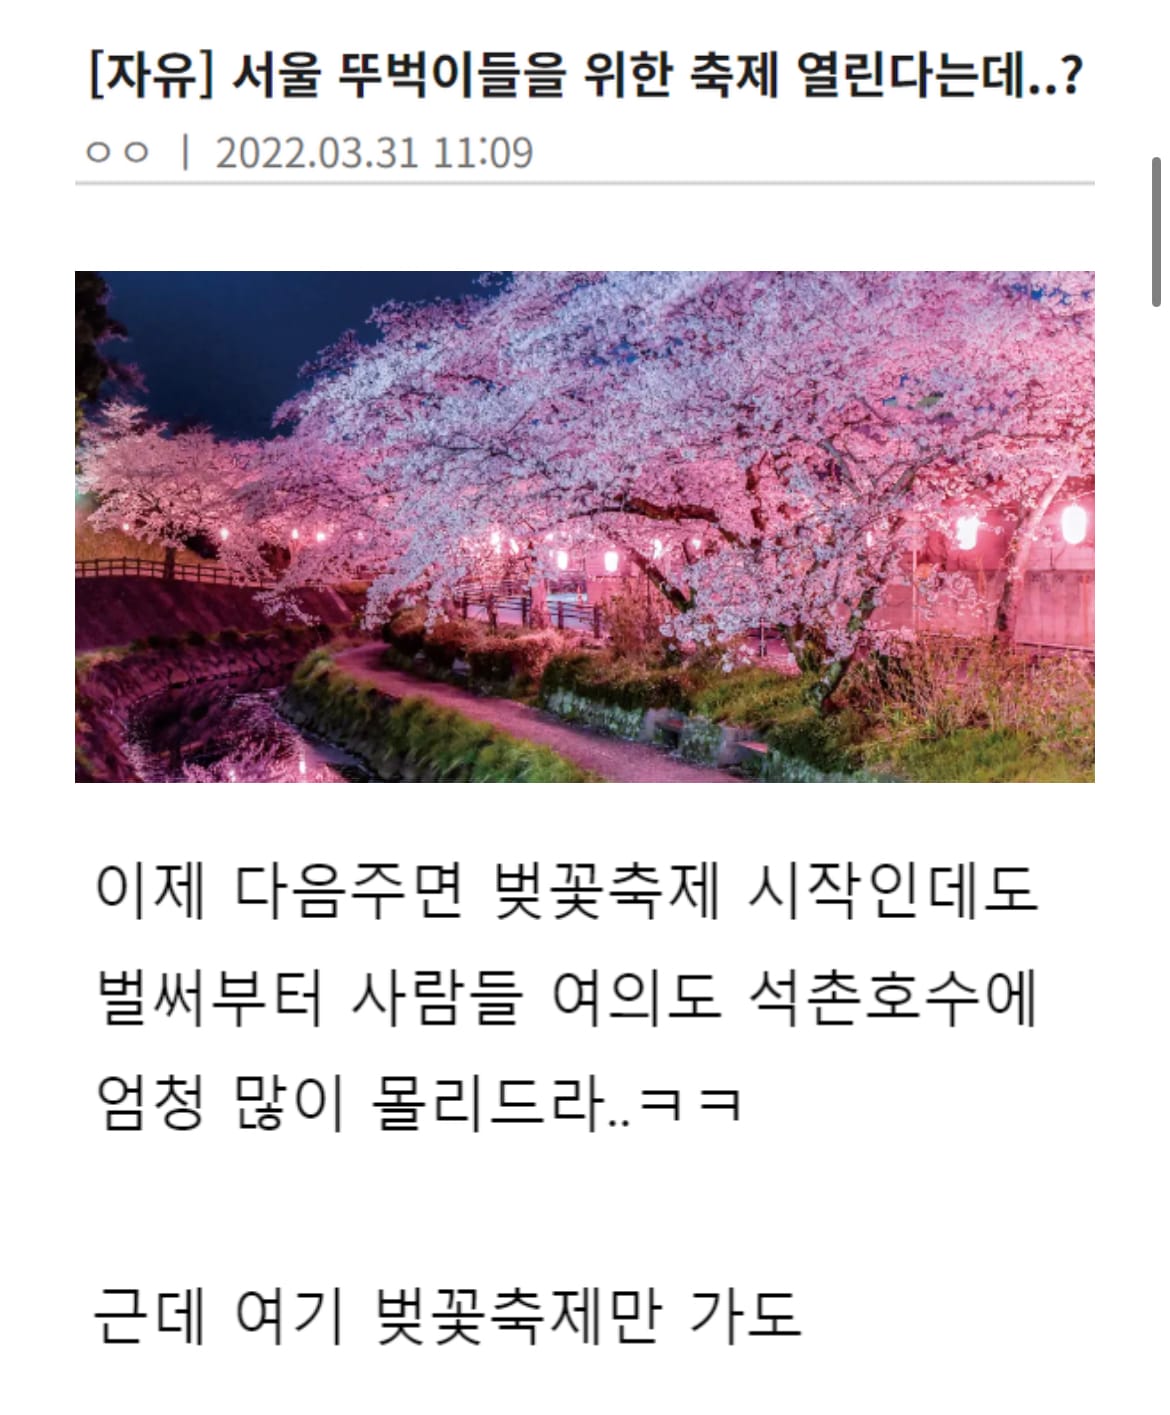 뚜벅이 개붕이들도 여자 꼬시기 가능하다는 ‘서울 헌팅축제’